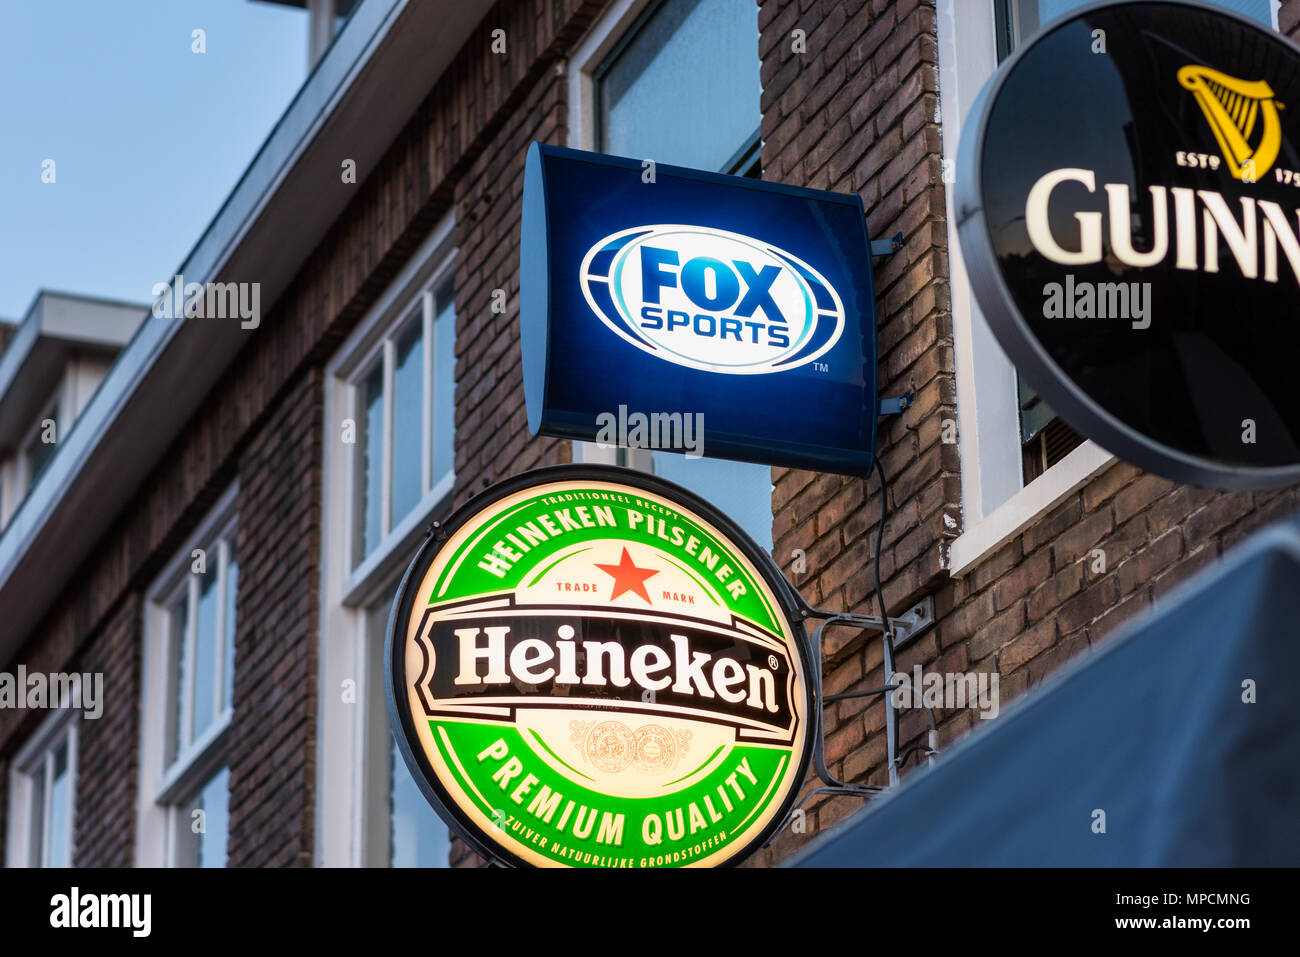 Fox Sports, Heineken und Guinness Logos vor einer Bar in Alkmaar, Niederlande. Fuchs Sport Live-übertragungen professionellen Fußball in den Niederlanden. Stockfoto